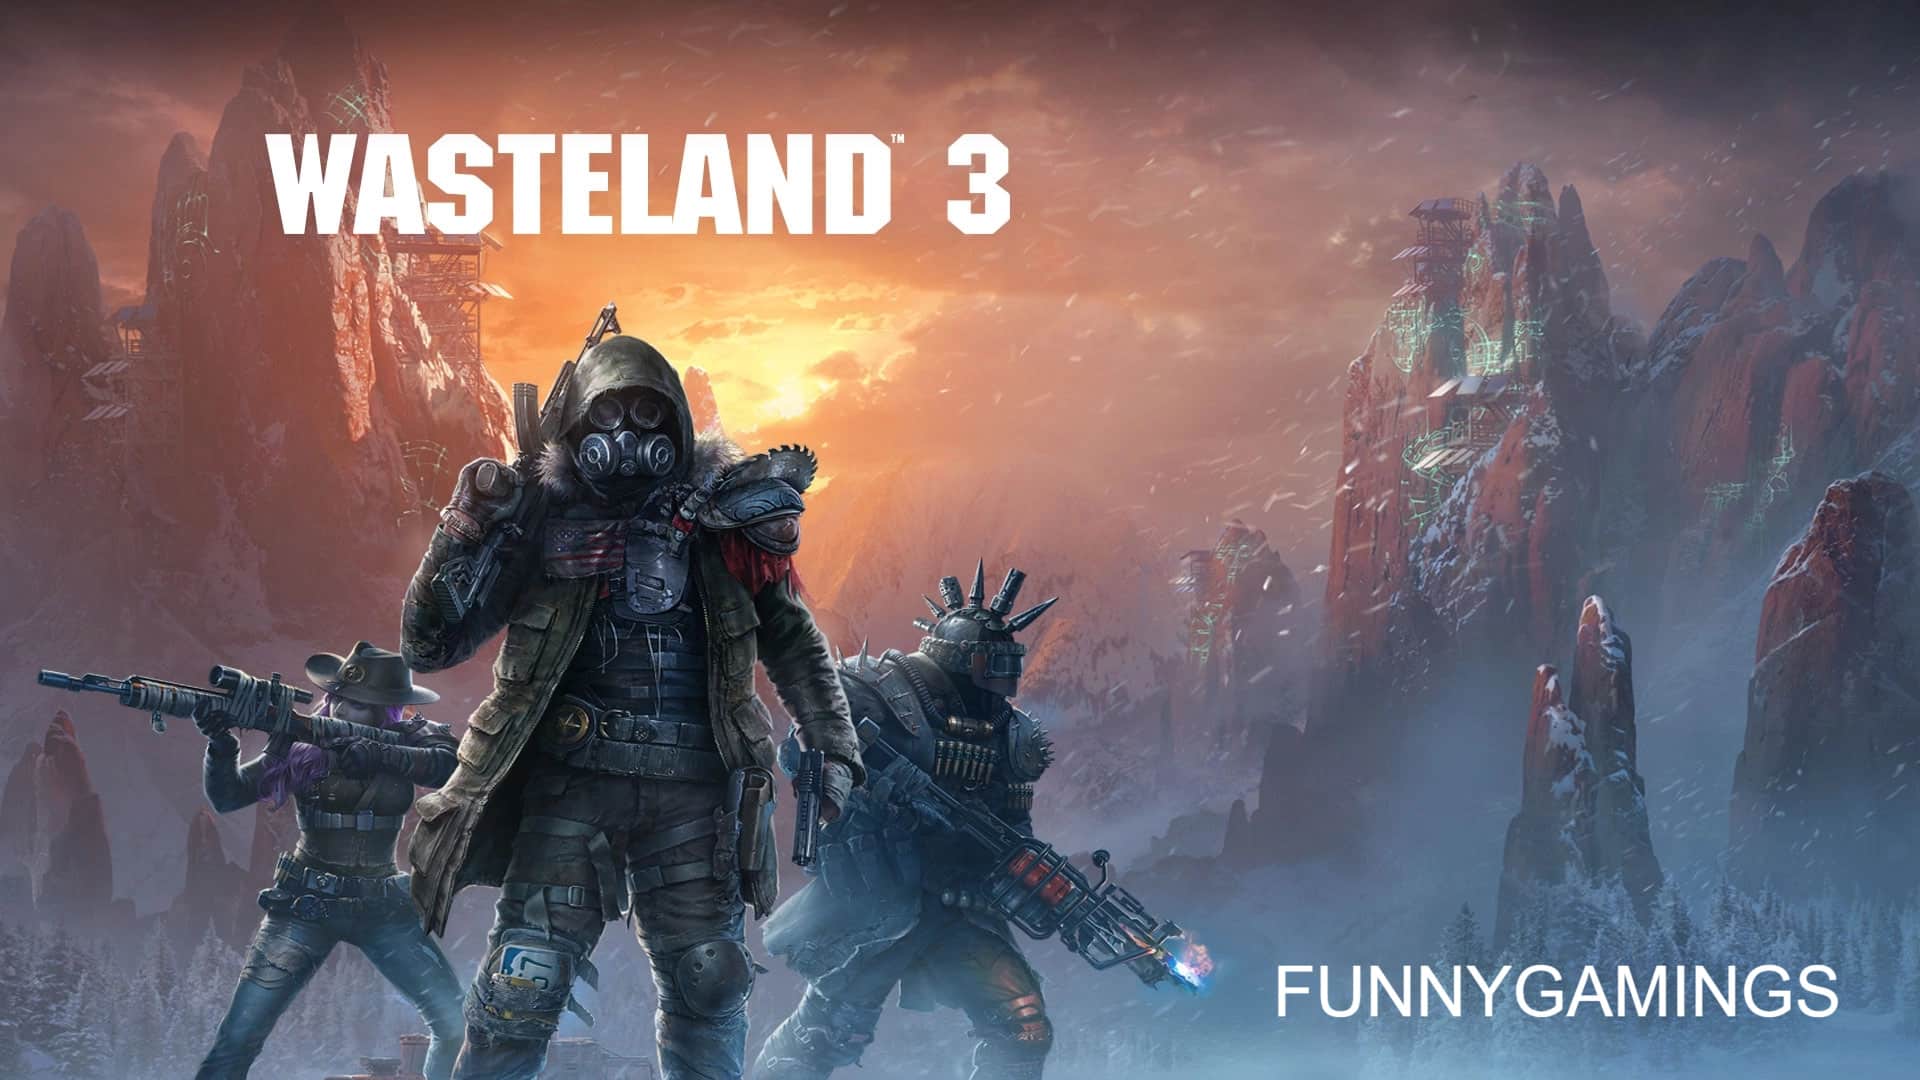 Review Game Wasteland 3 มันส์จริงภาคนี้ พี่ขอบอก